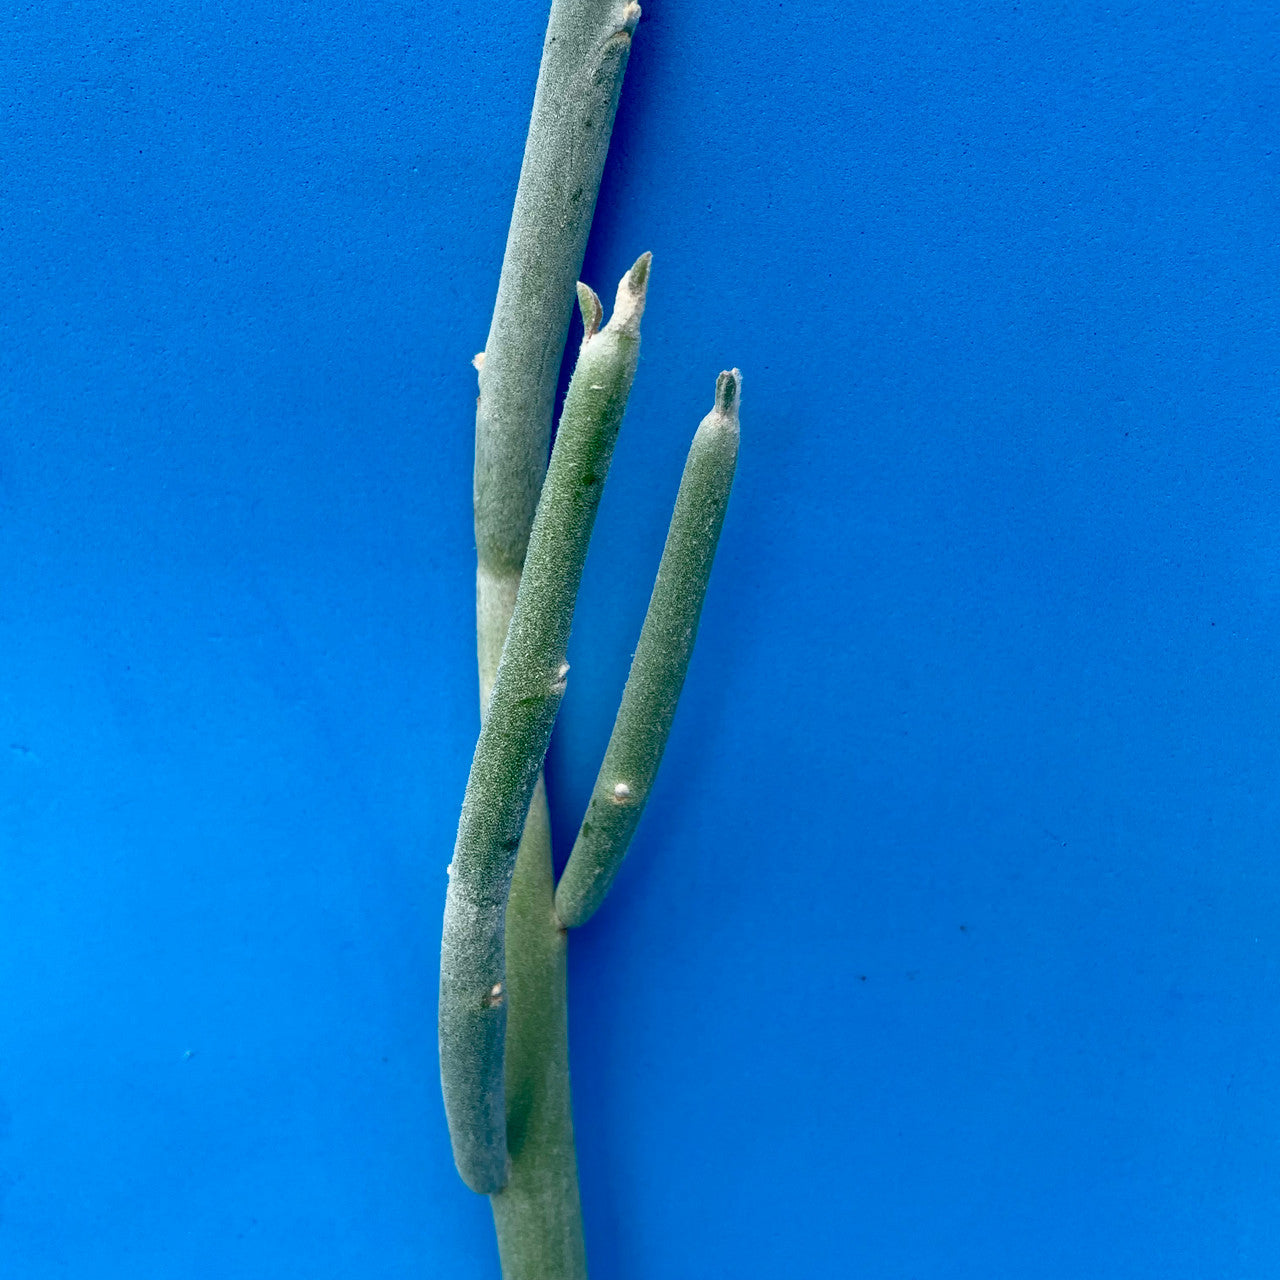 Pedilanthus macrocarpa...long green... - Waterwise Botanicals | Facebook